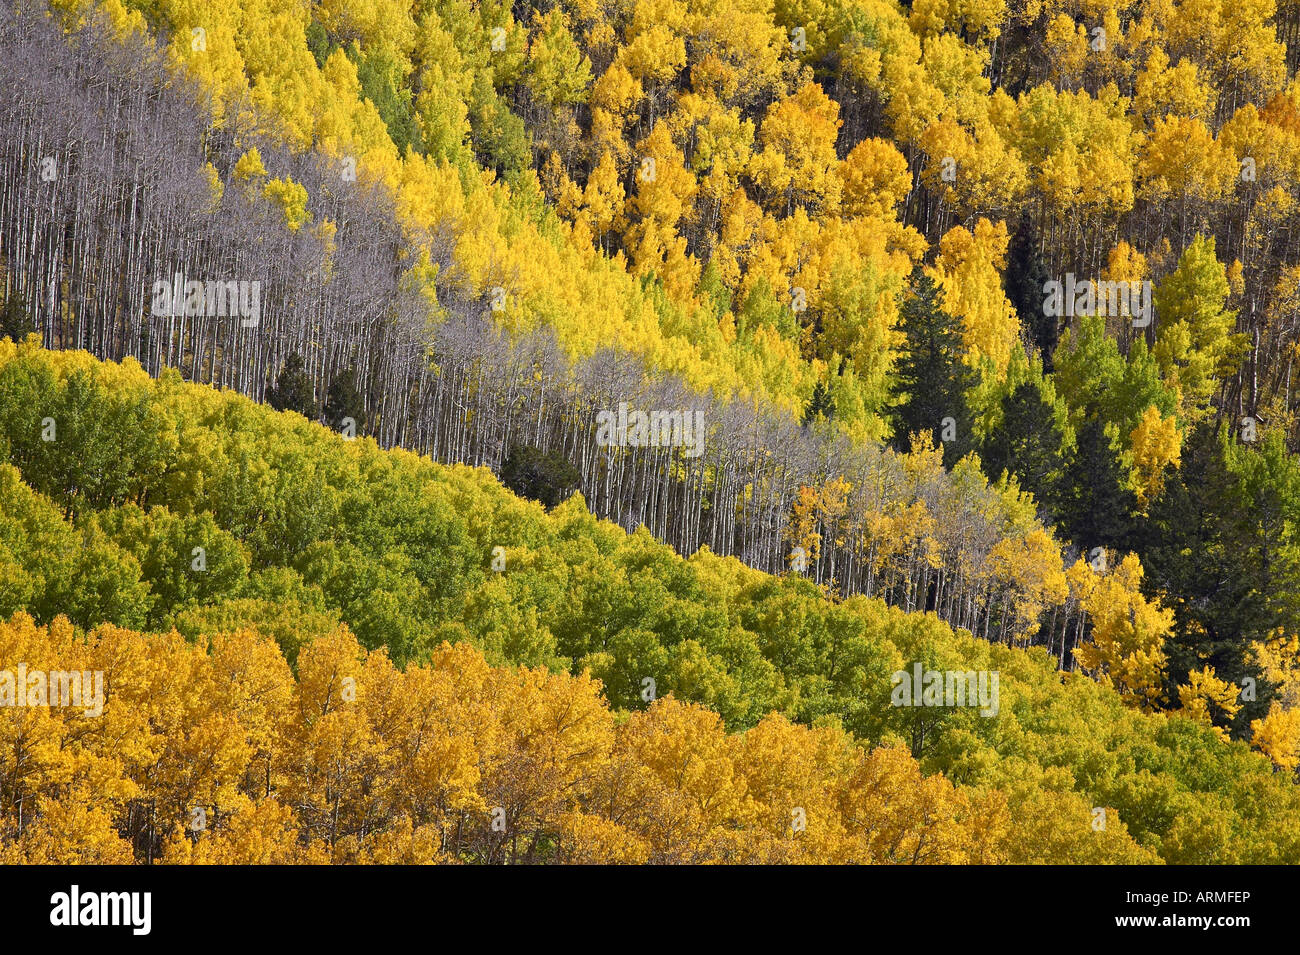 Couleurs d'automne de trembles à feuilles persistantes, près de Ouray, Colorado, États-Unis d'Uninted Amérique, Amérique du Nord Banque D'Images